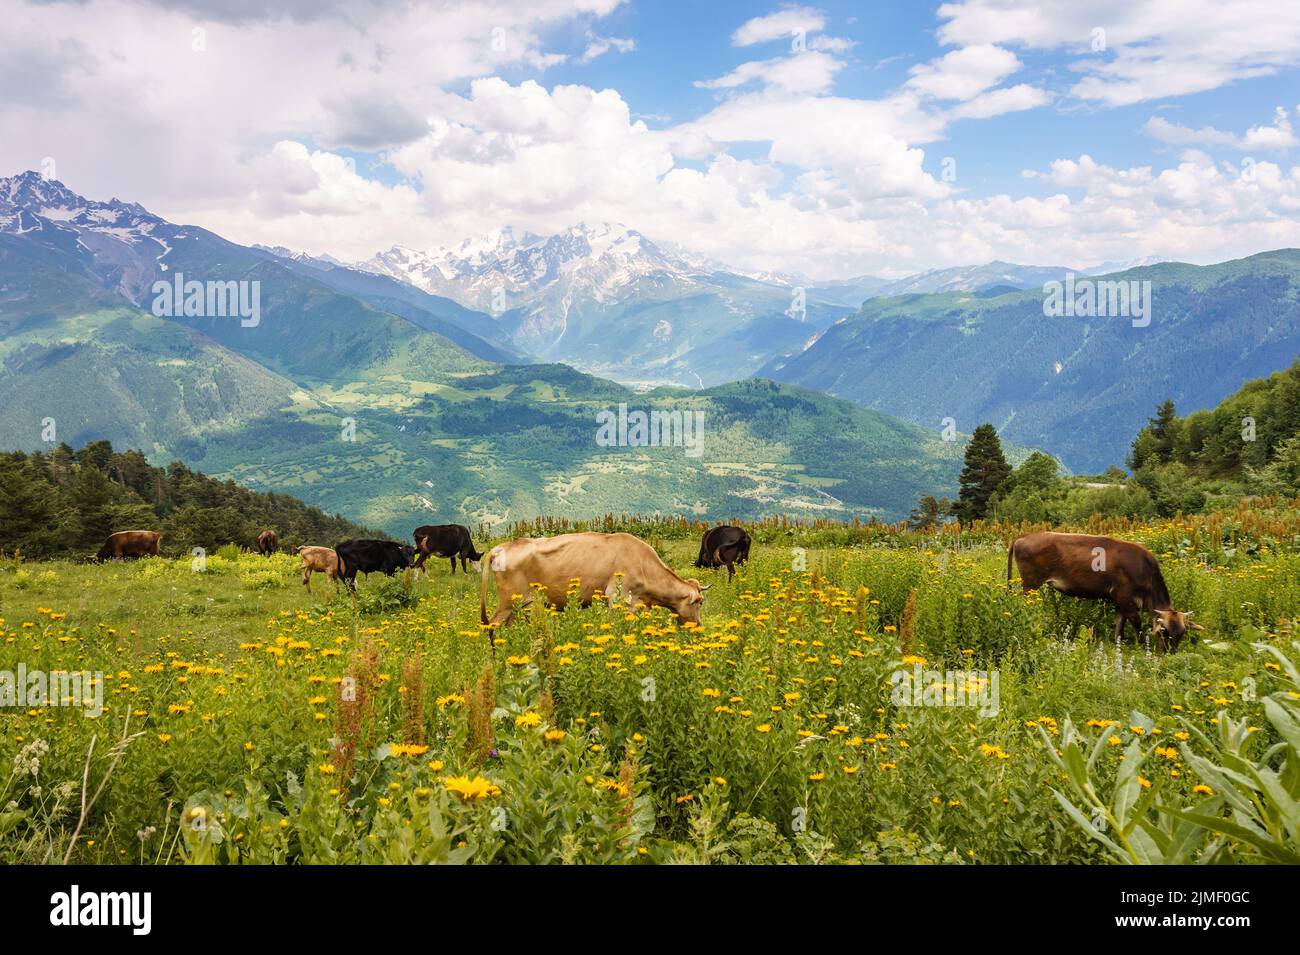 Svaneti, paysage de la Géorgie près de Mestia lors d'une journée d'été. Vaches dans un pré avec chaîne de montagnes du Caucase dans la neige en arrière-plan Banque D'Images